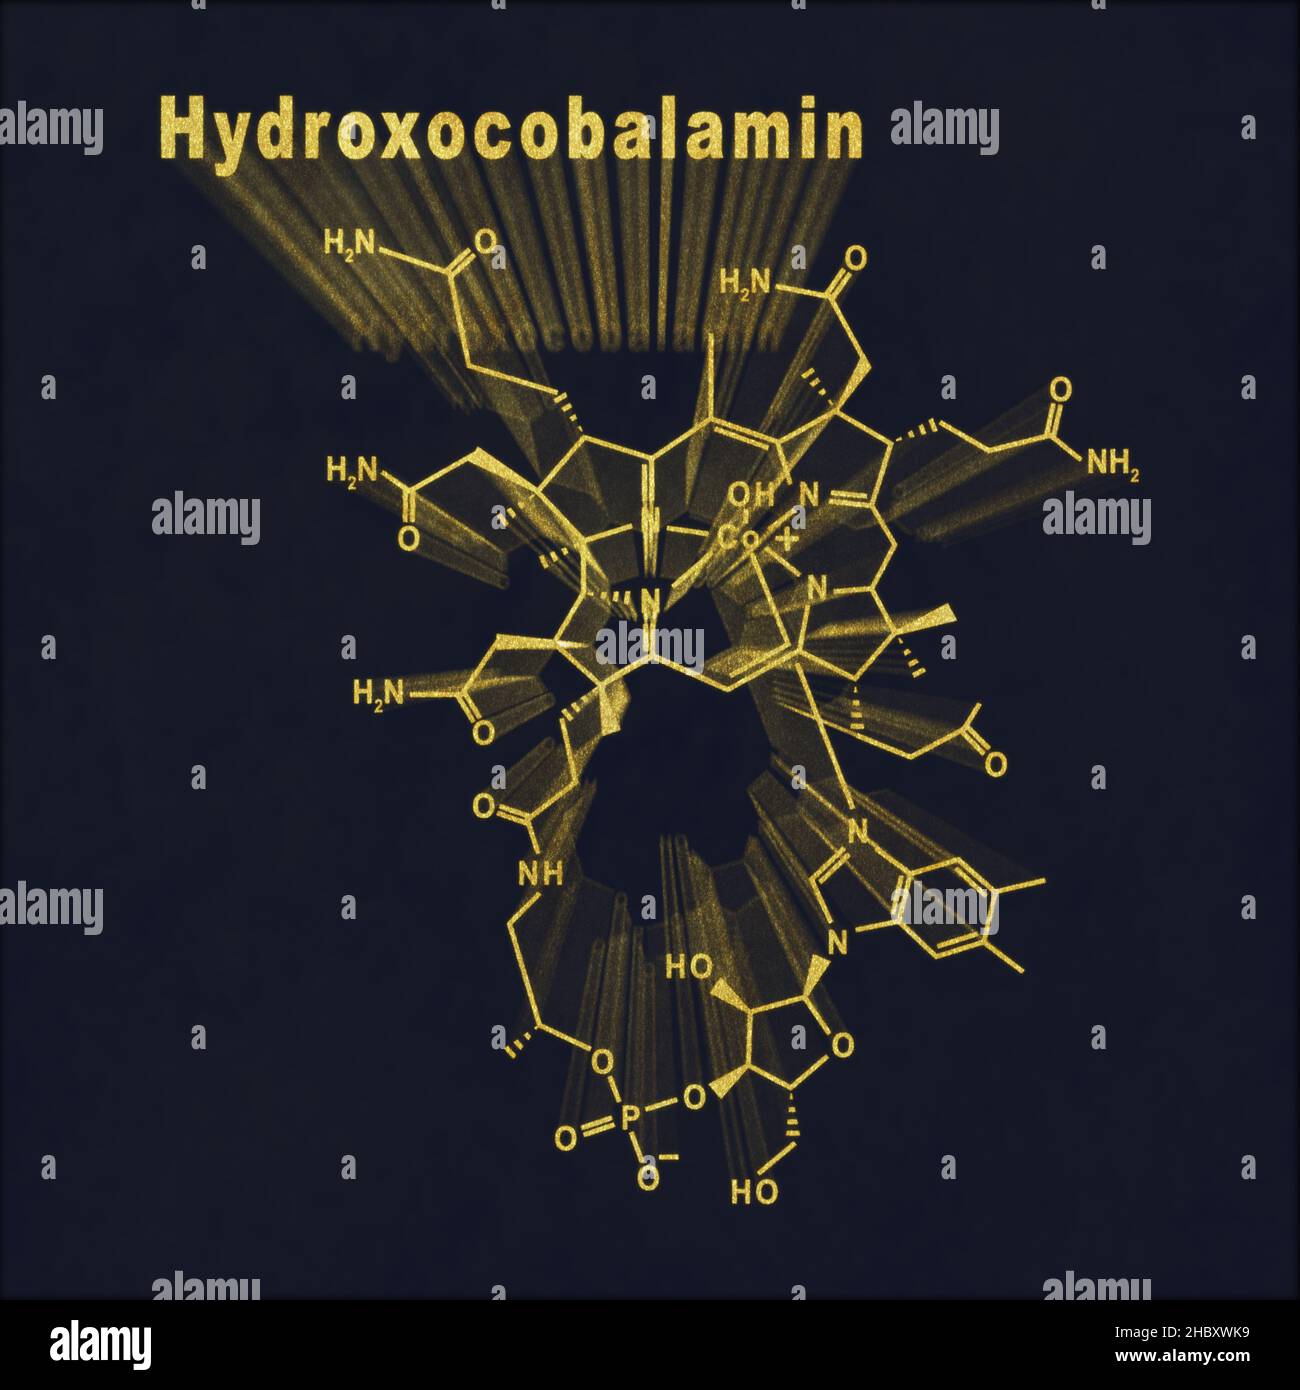 Hydroxocobalamine vitamine B12, formule chimique structurale or sur fond sombre Banque D'Images